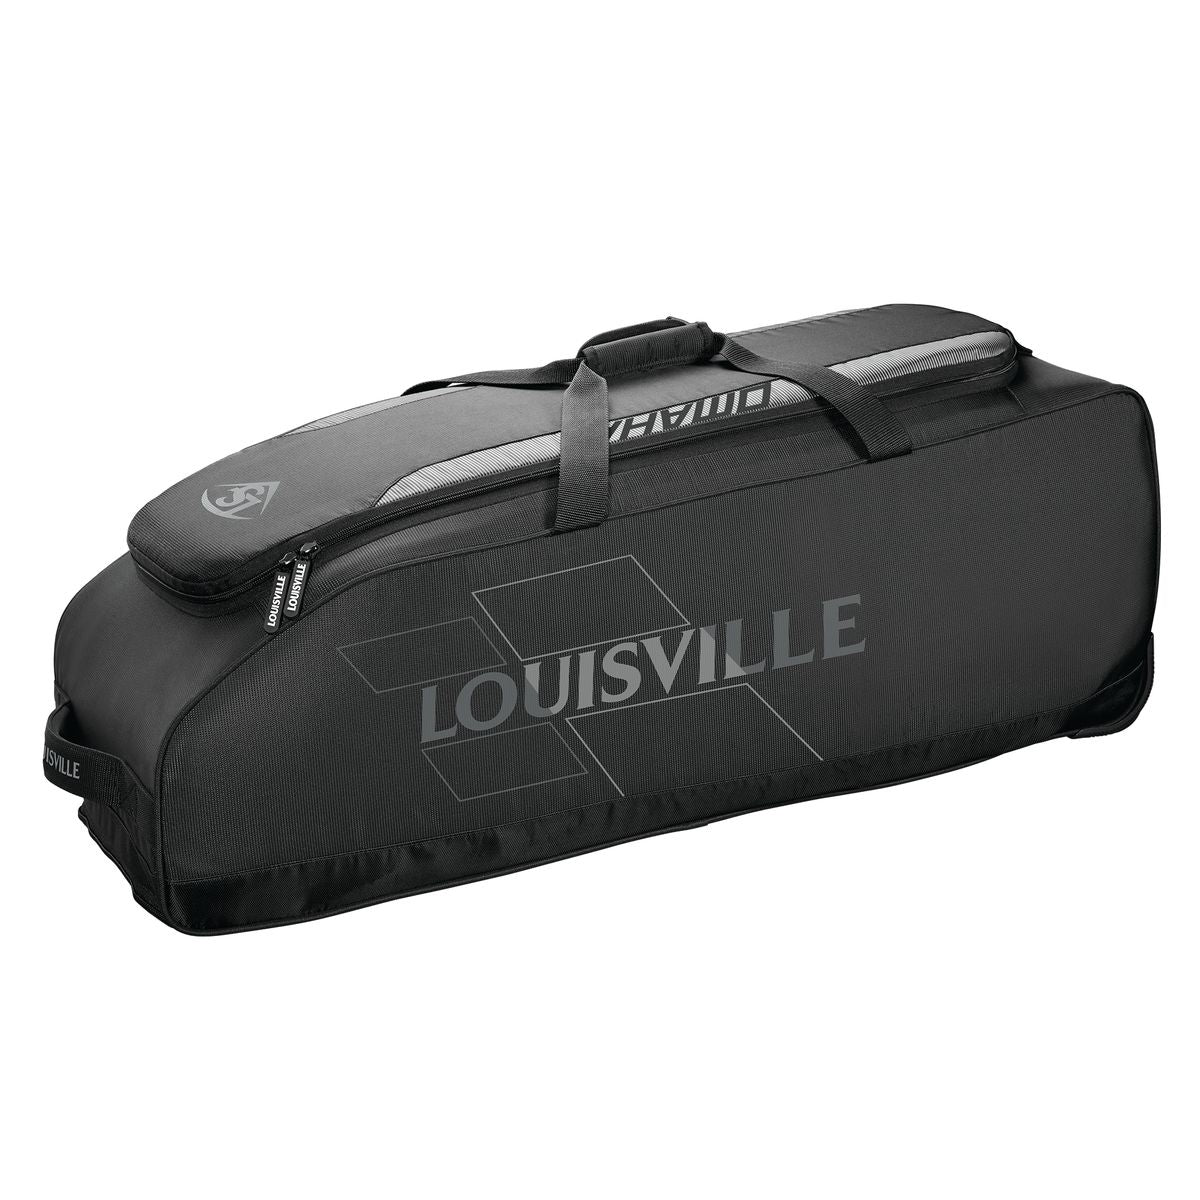 RIG BAG - OMAHA Louisville Slugger  BLACK O/S   WHEELED BAGS  (5455677030564)